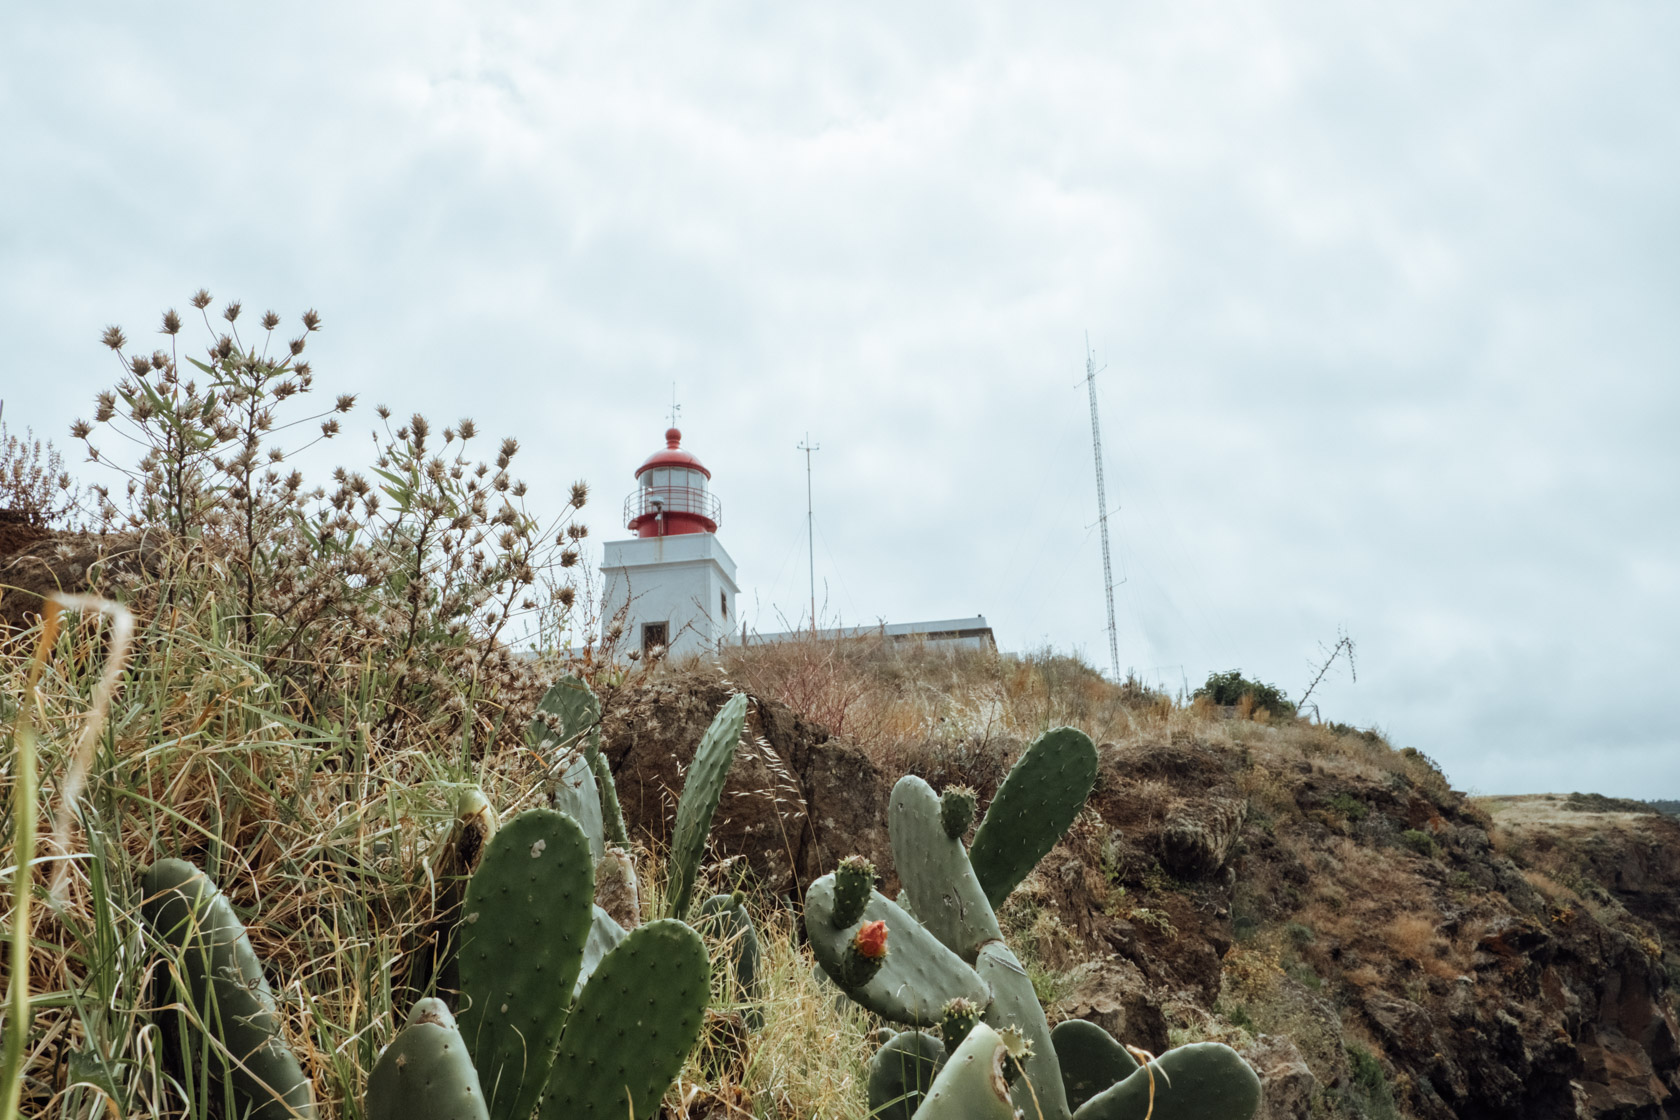 Ponta do Pargo Lighthouse